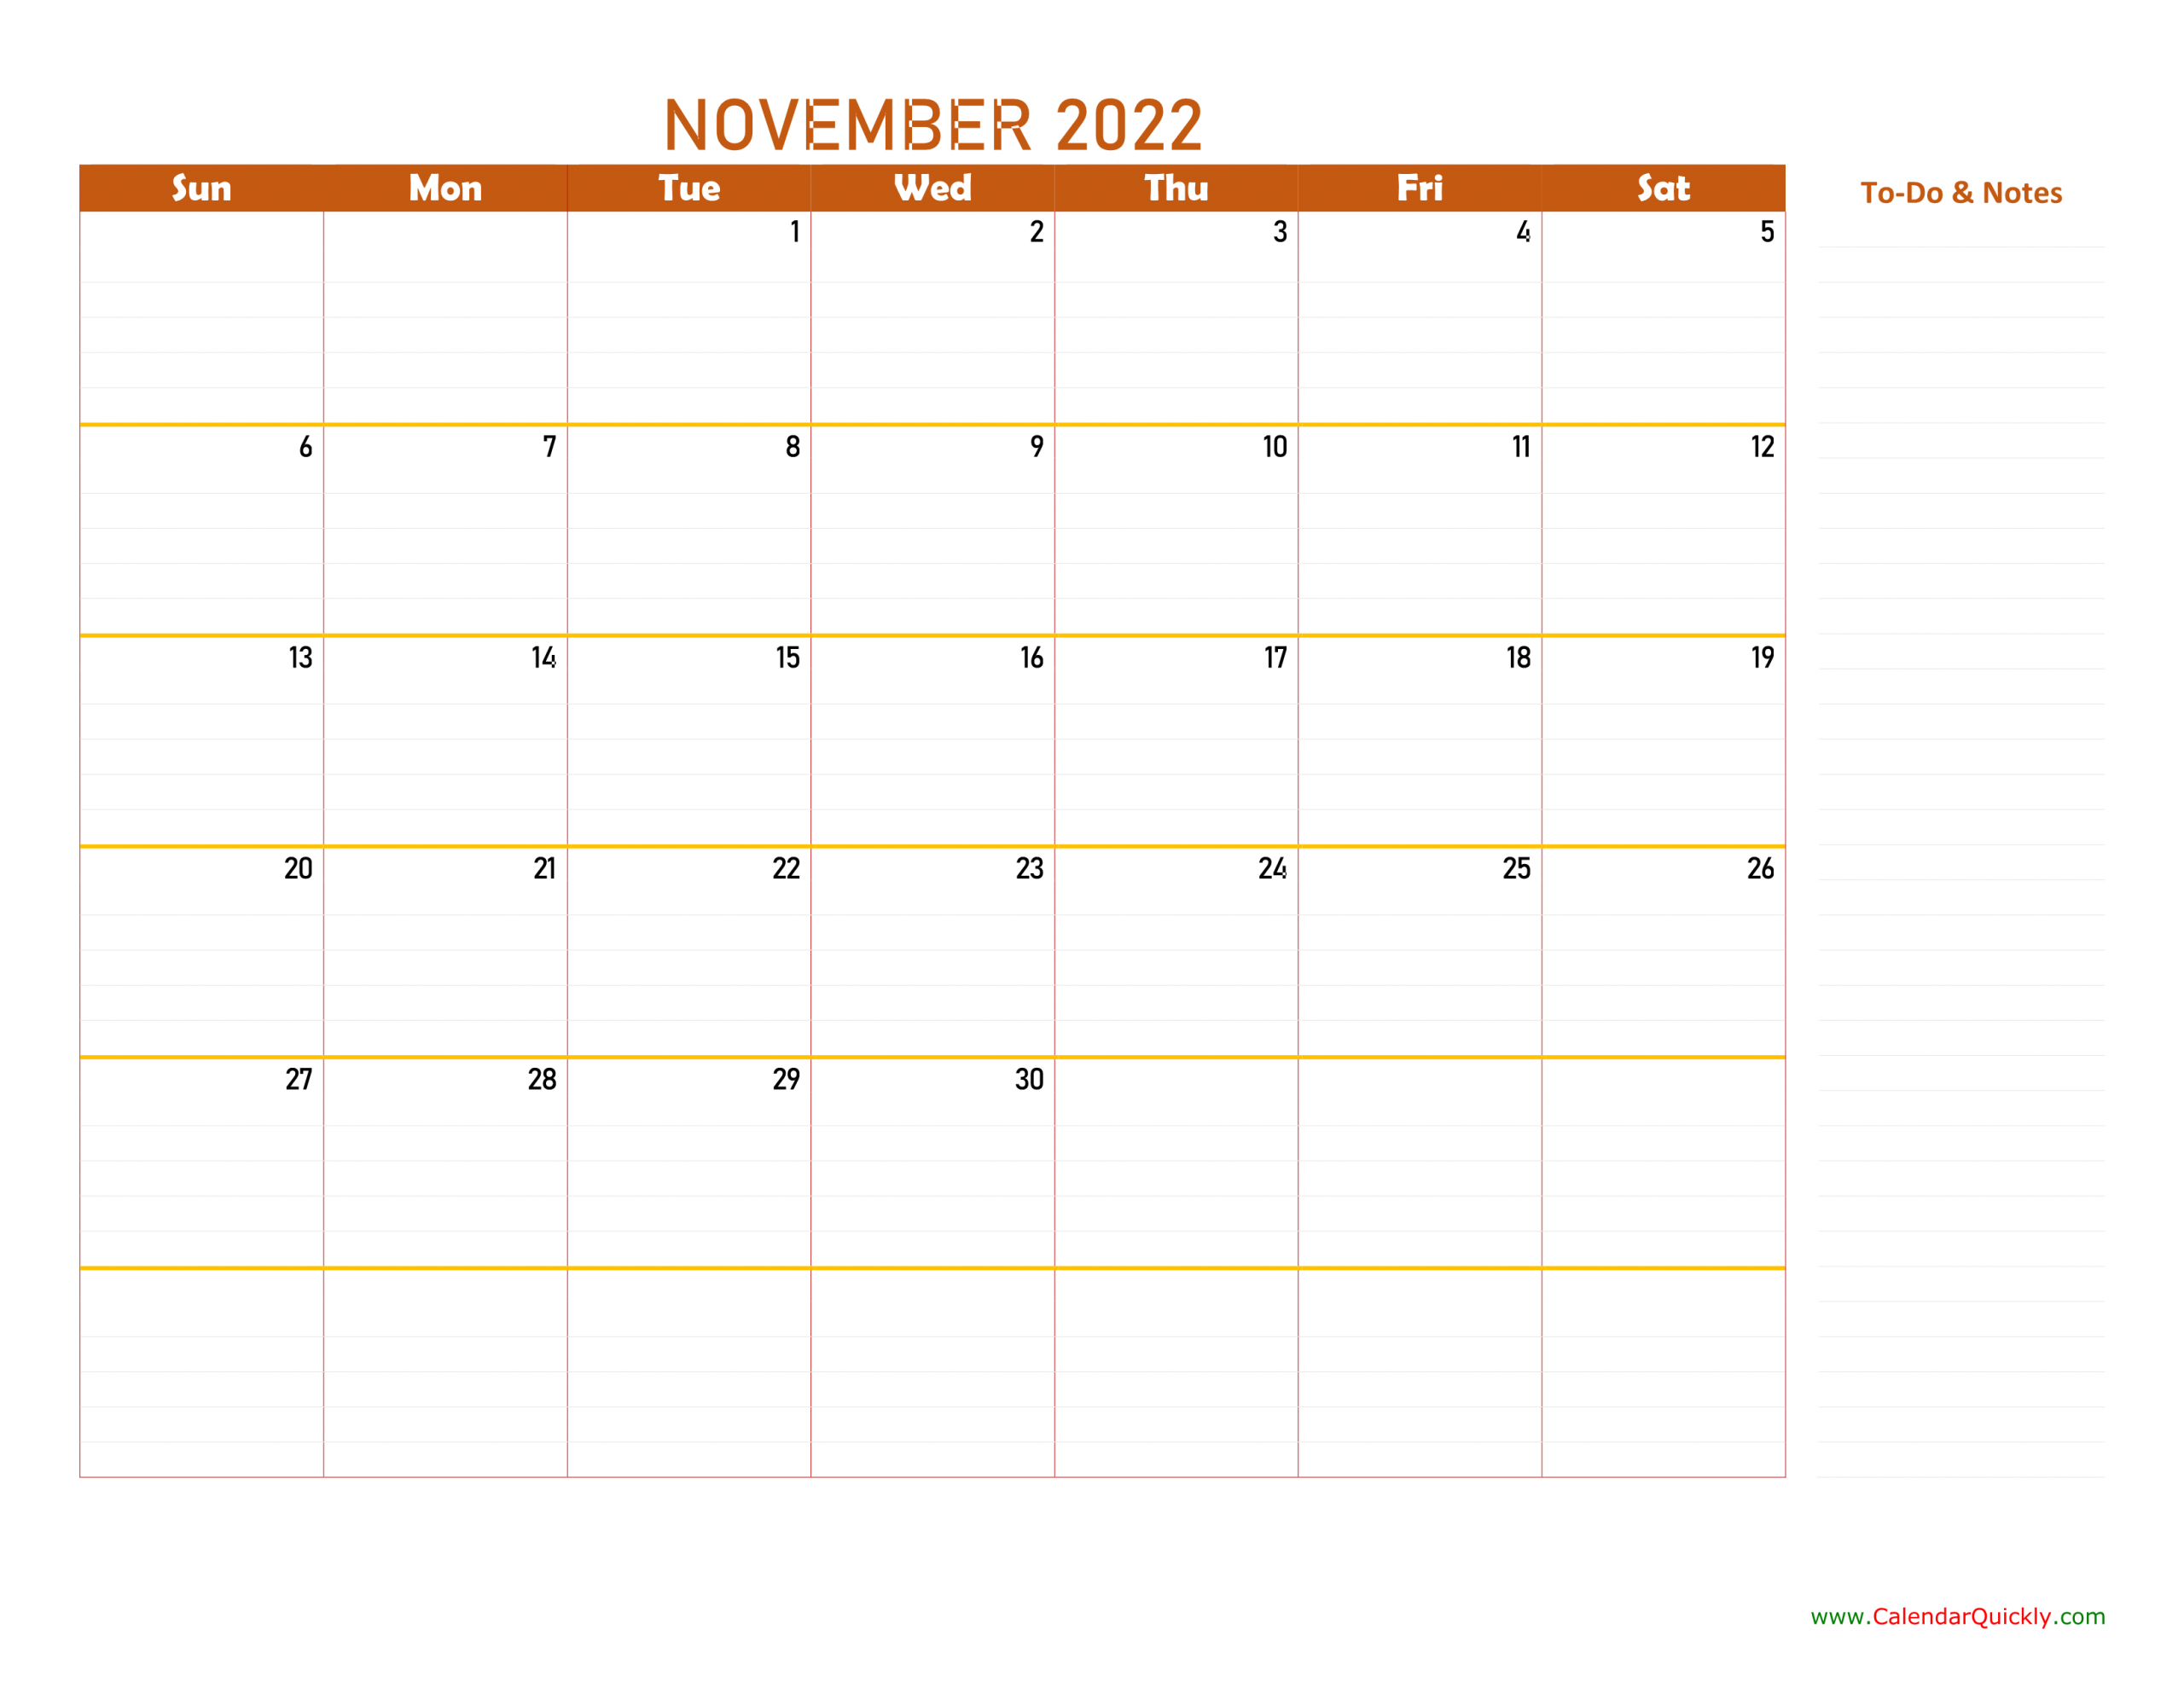 November 2022 Calendar | Calendar Quickly November 2022 Calendar Template